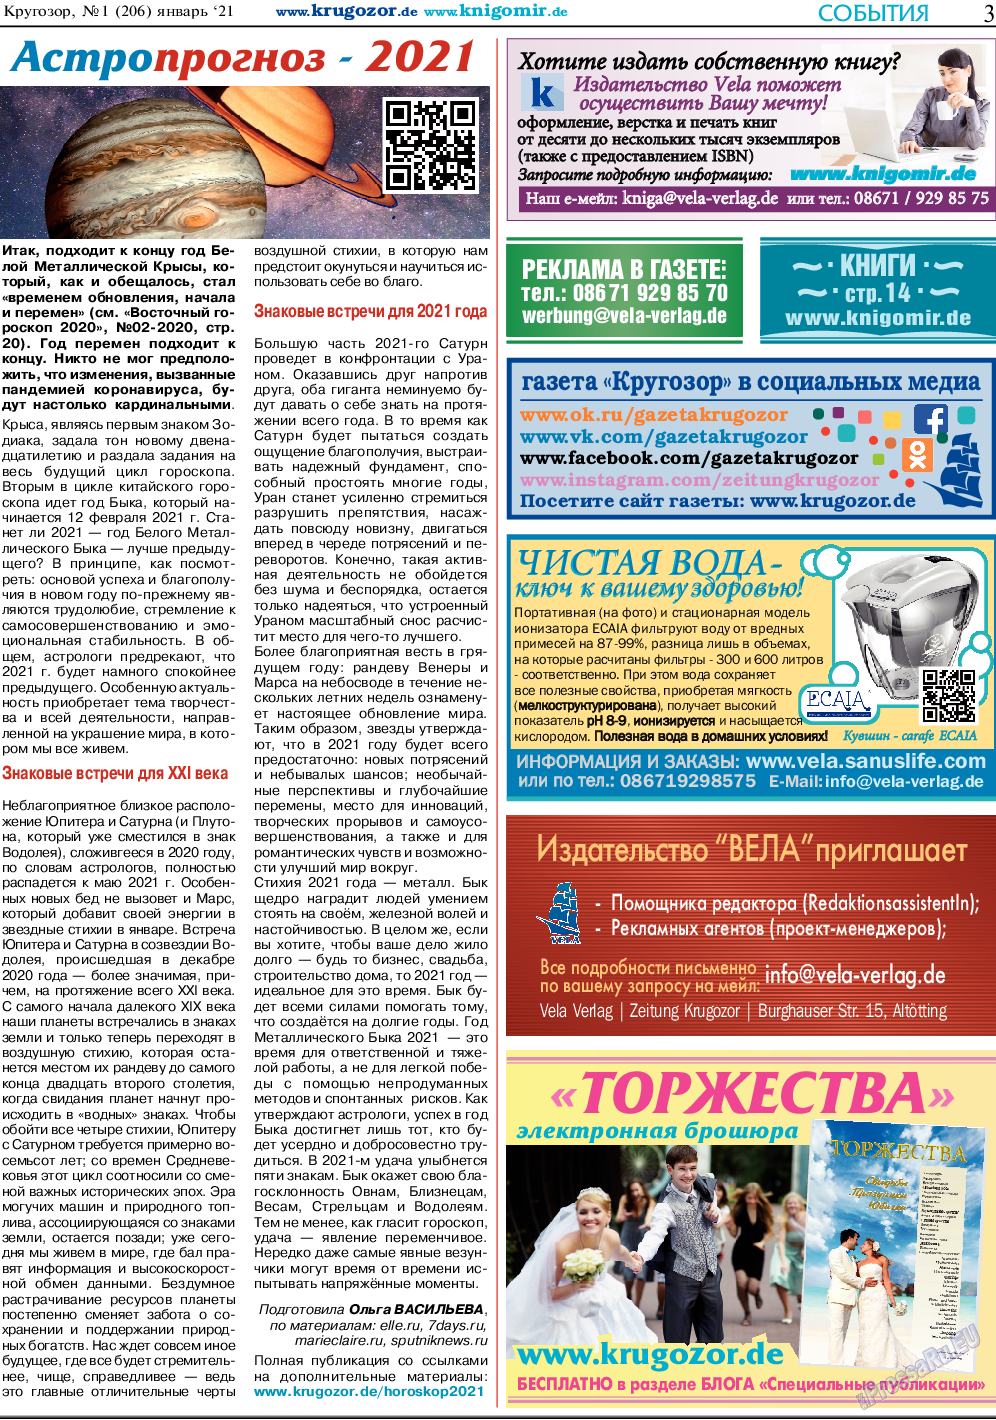 Кругозор, газета. 2021 №1 стр.3